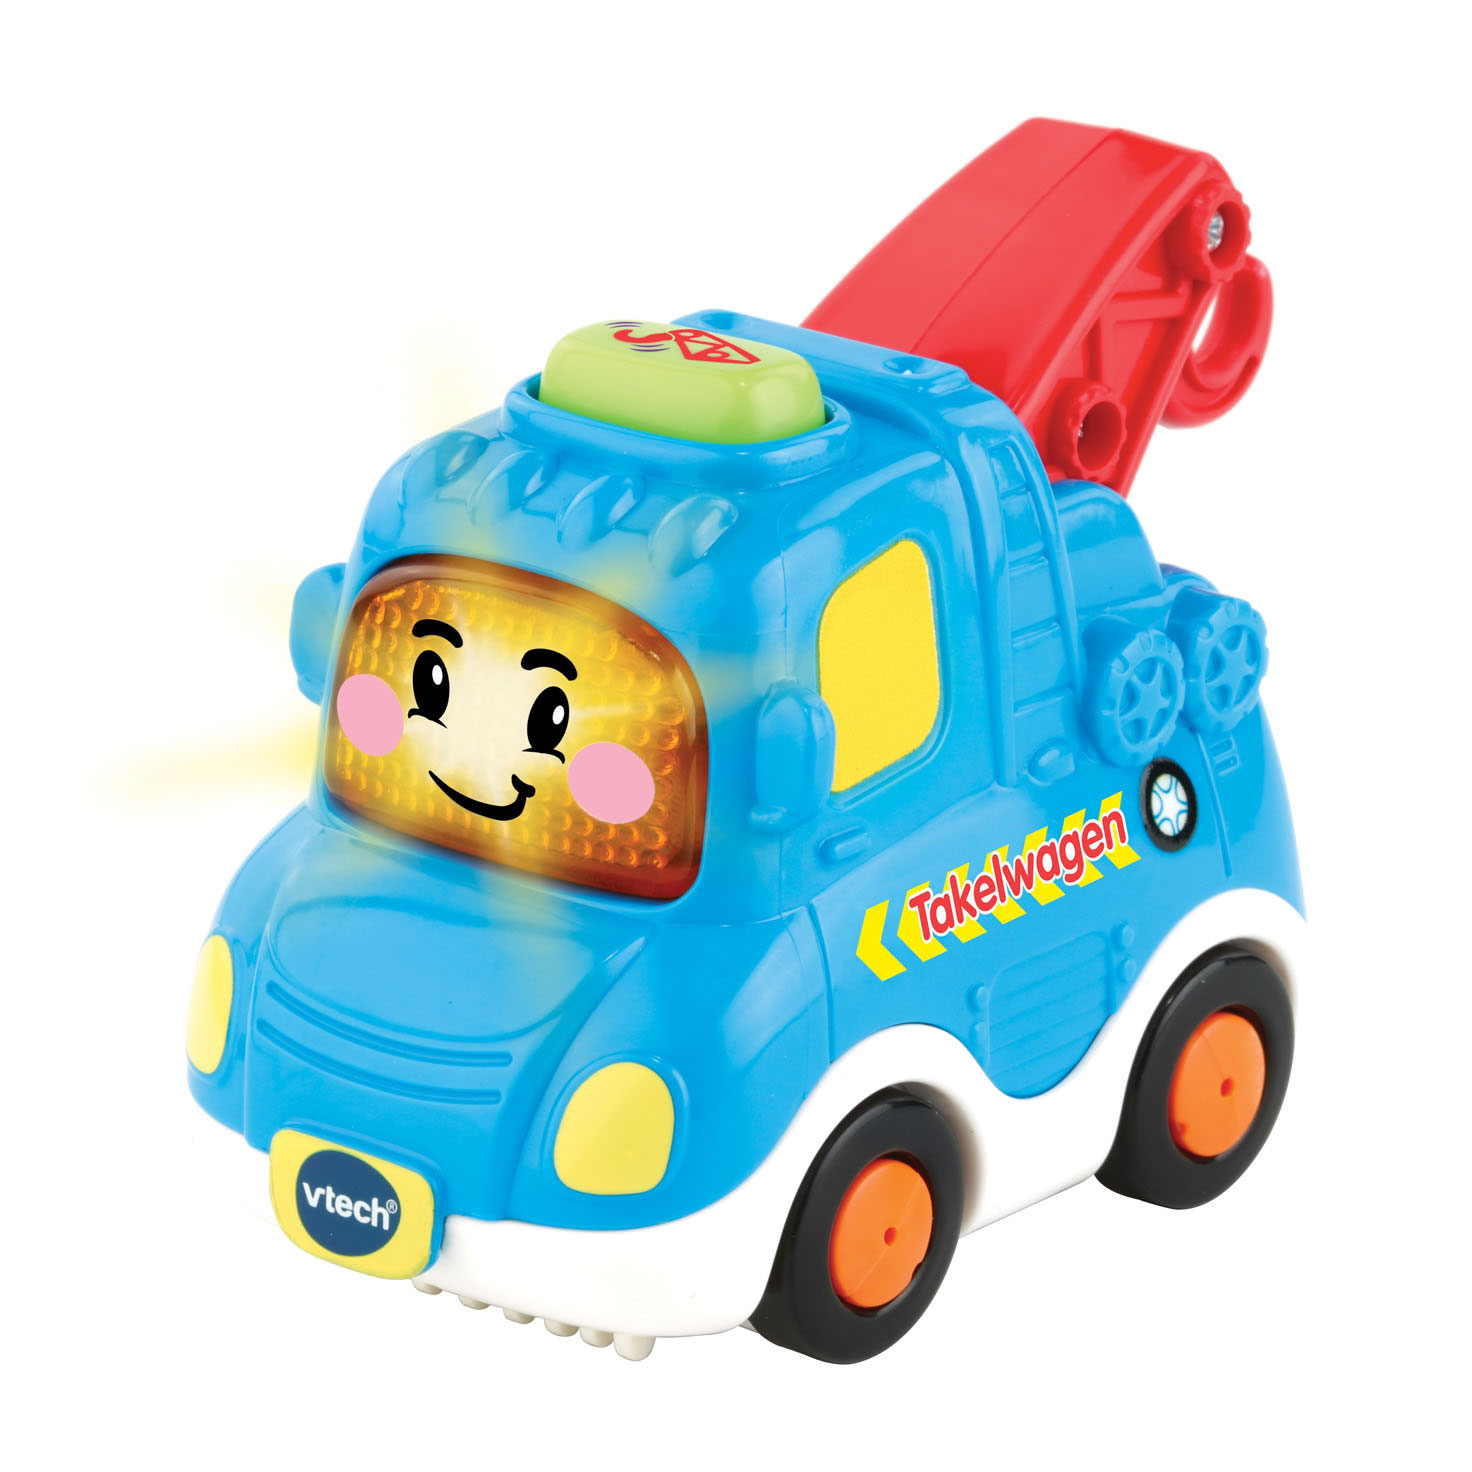 VTech Toet Toet Cars - Owen, Tygo | Thimble Toys